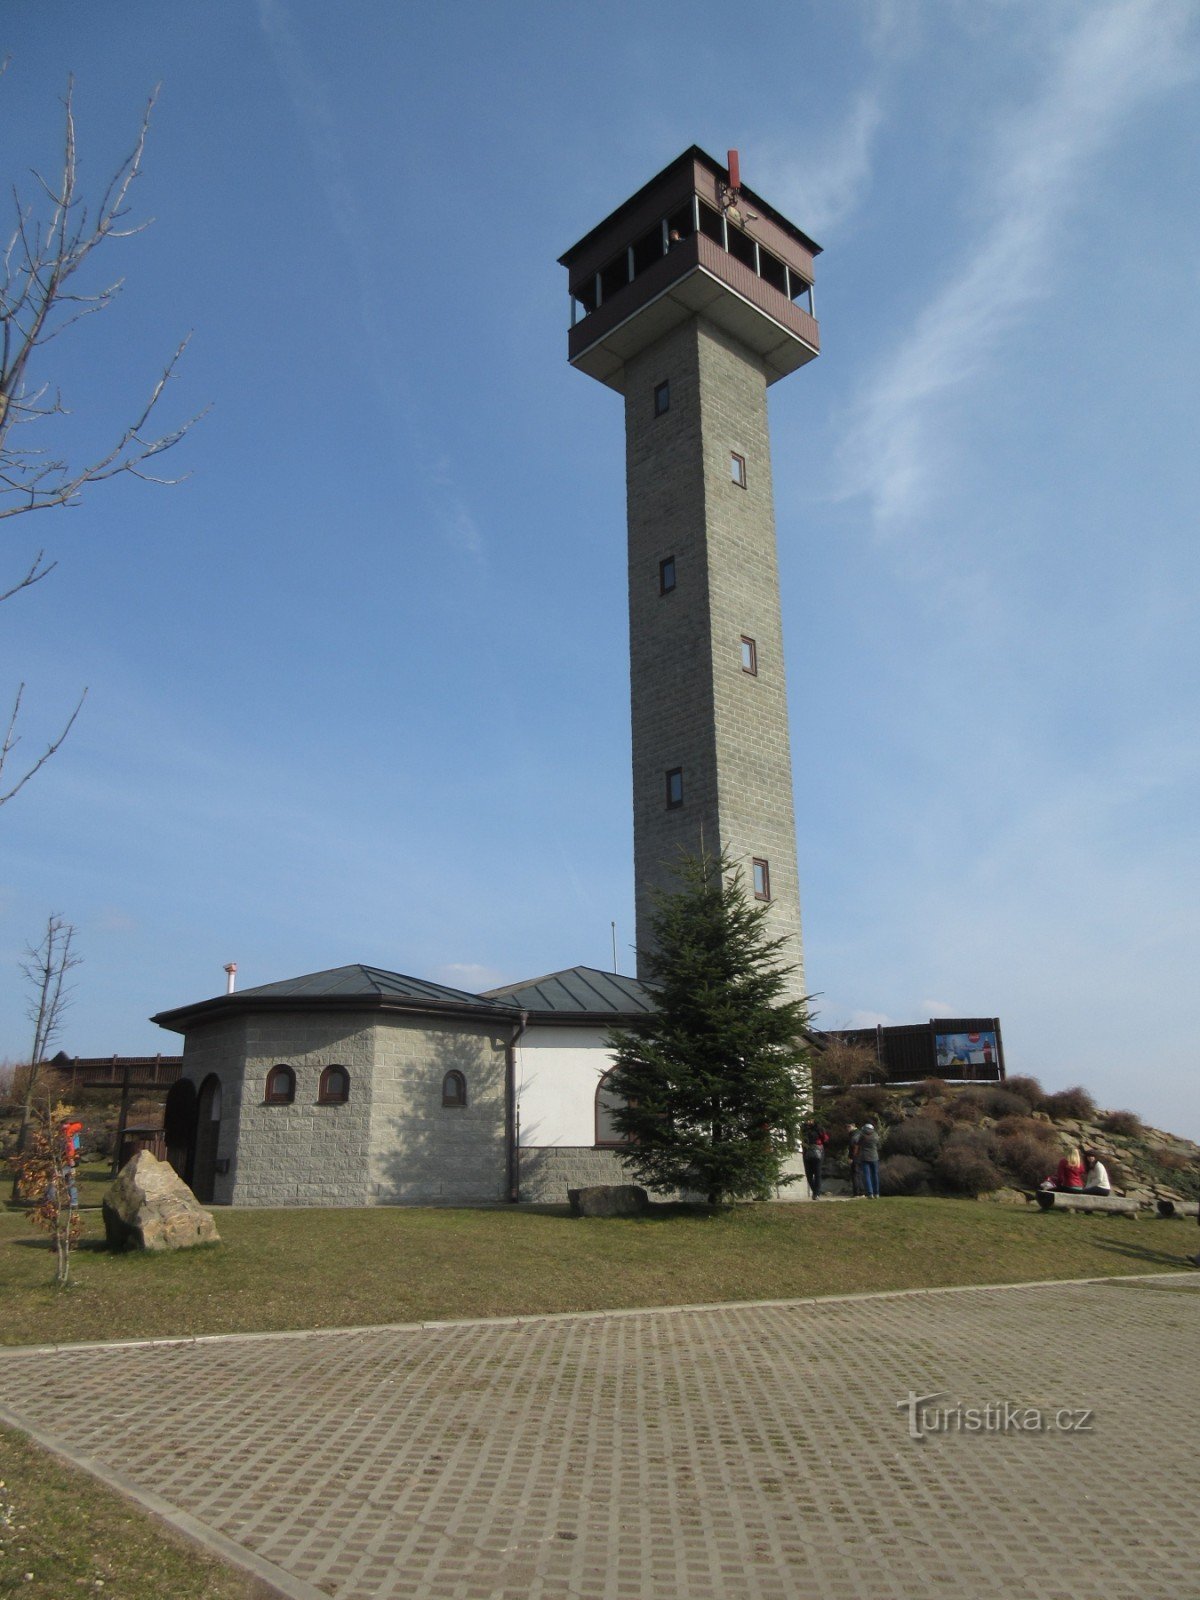 Карасин – зона спортивной реабилитации, смотровая башня и горнолыжный склон.